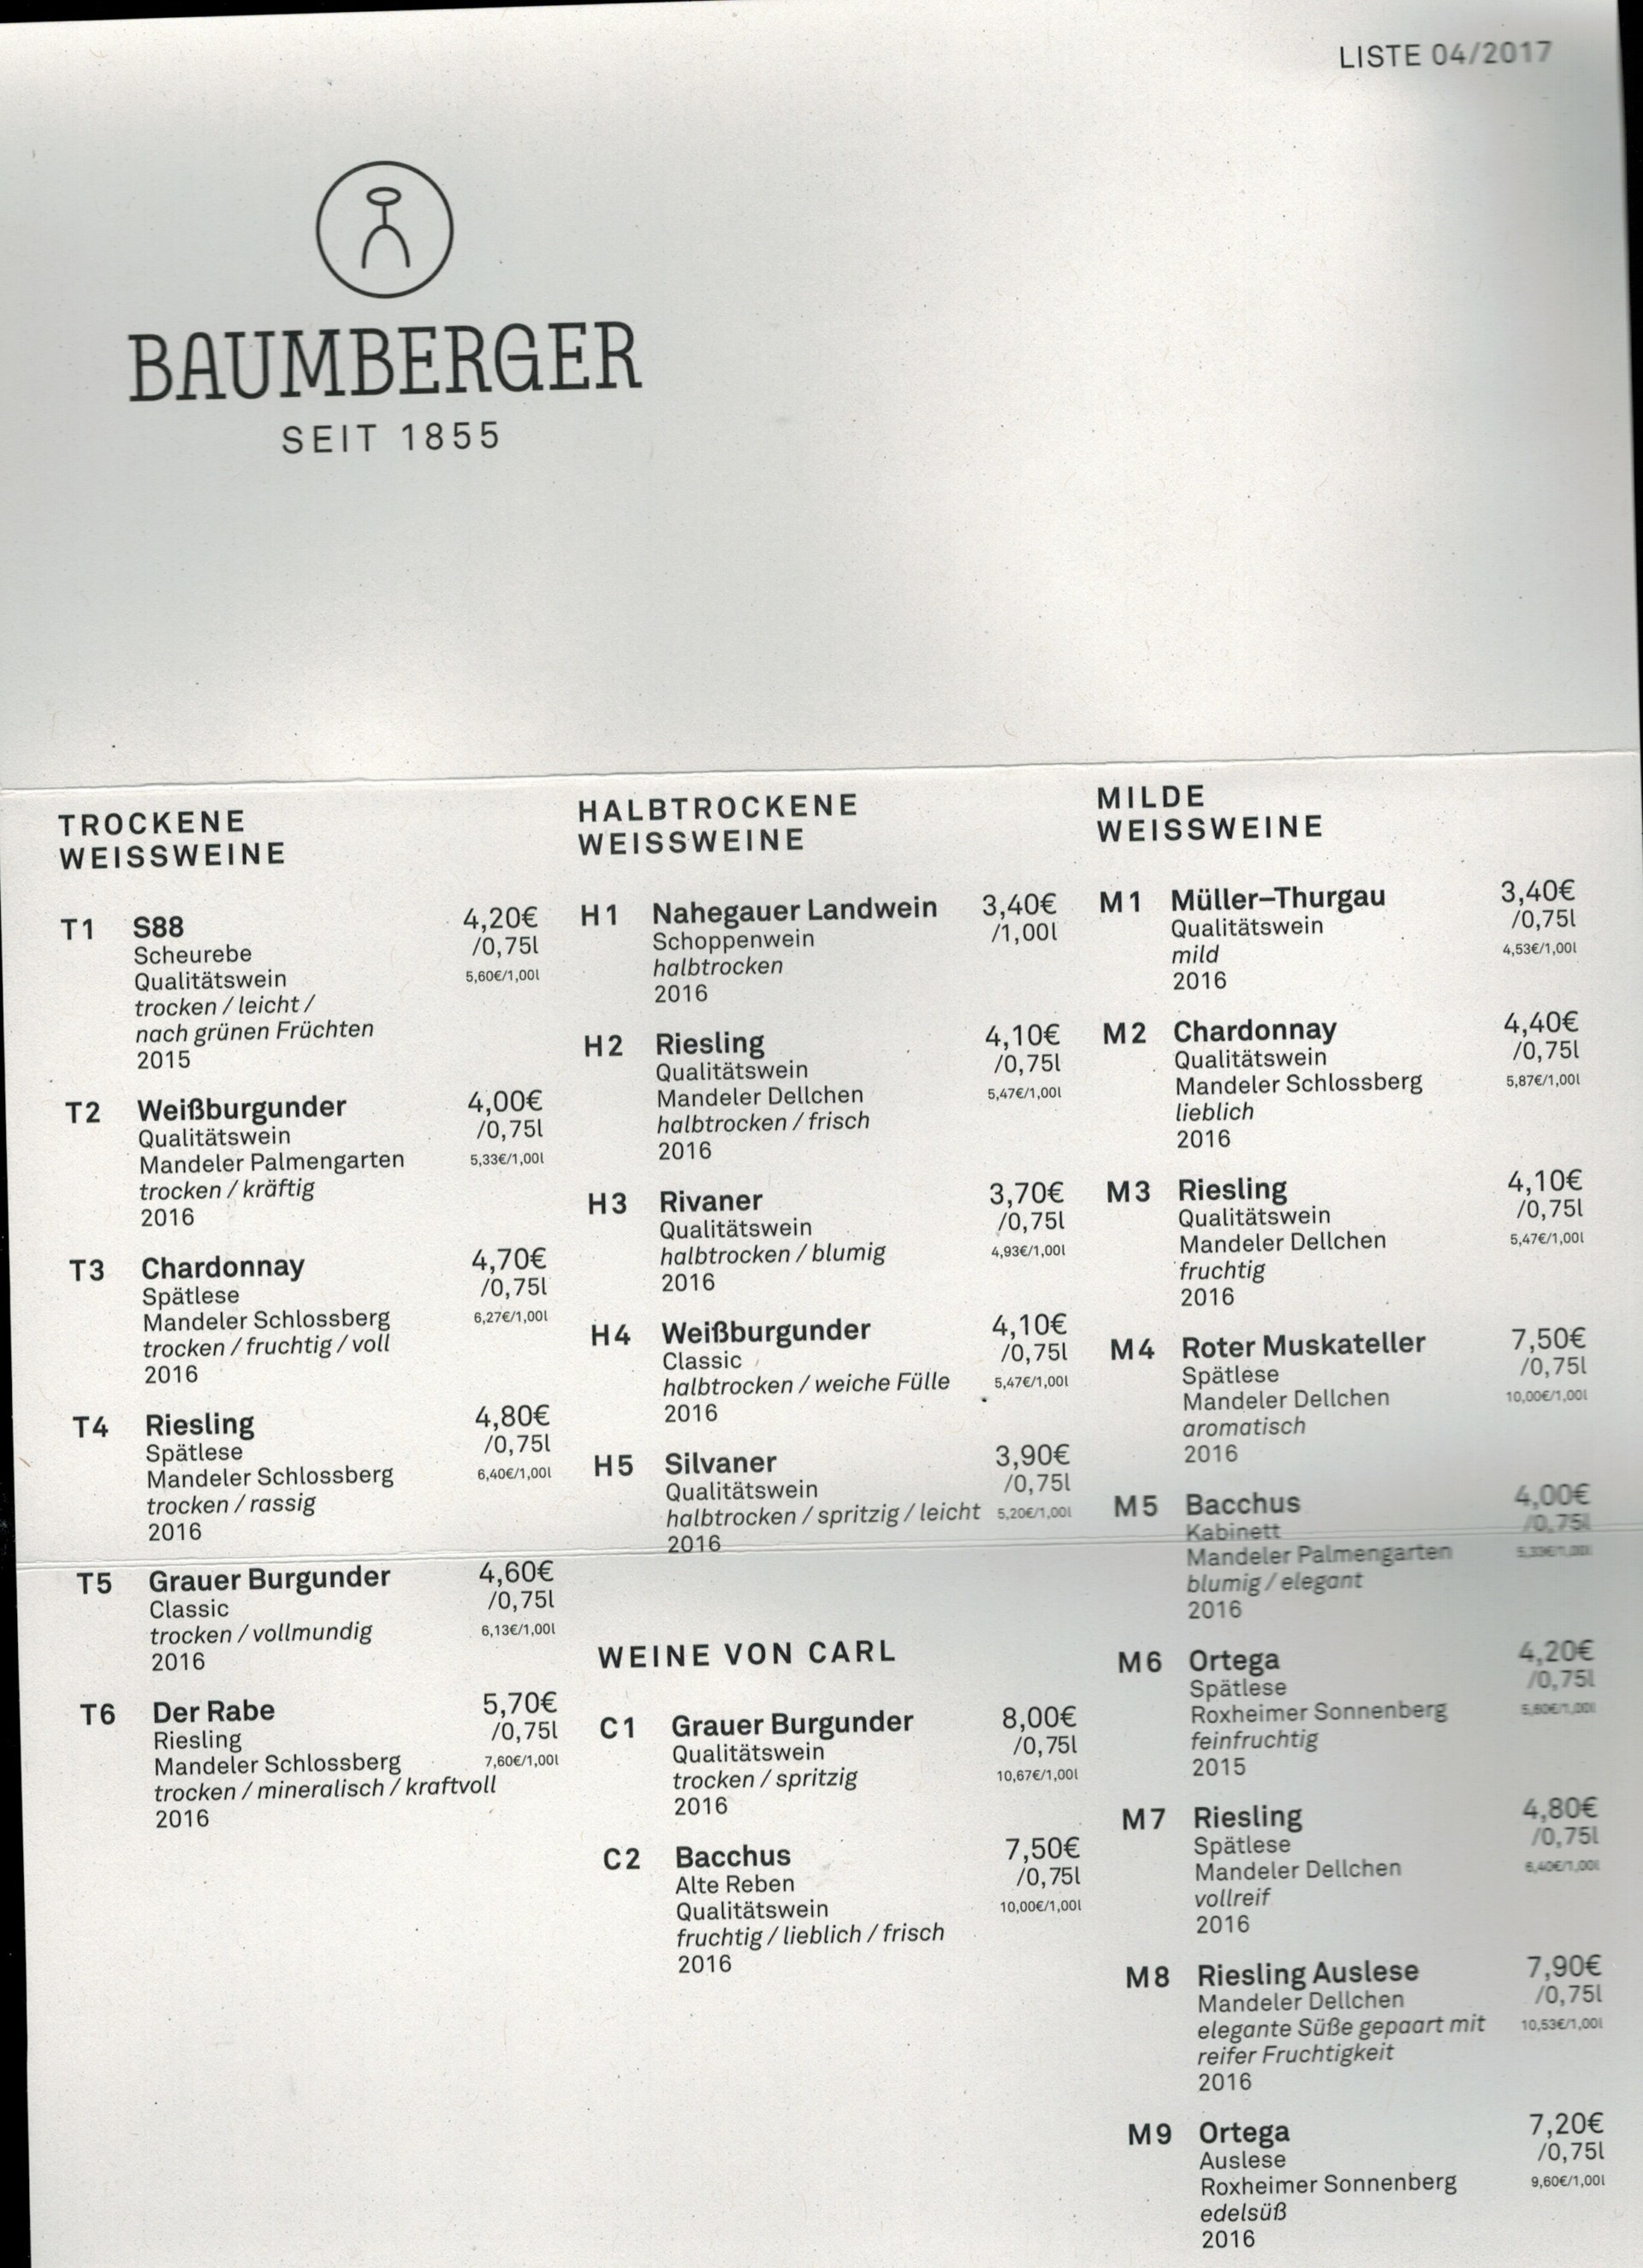 PAULINE BAUMBERGER Weingut Baumberger